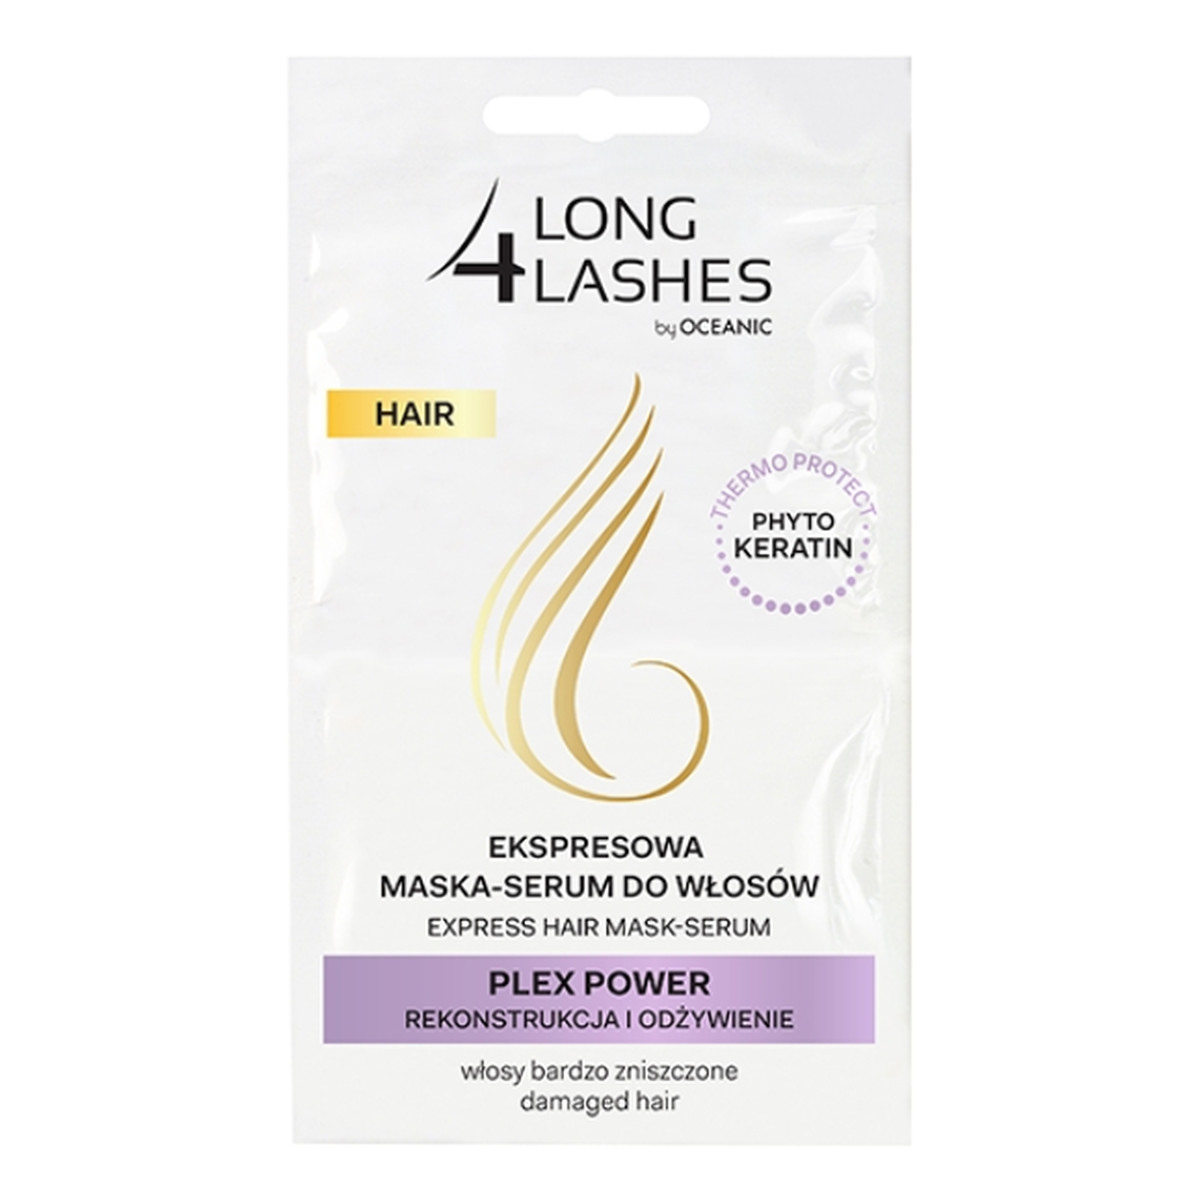 AA Long 4 Lashes Hair Plex Power ekspresowa maska-serum do włosów zniszczonych 2x6ml 12ml